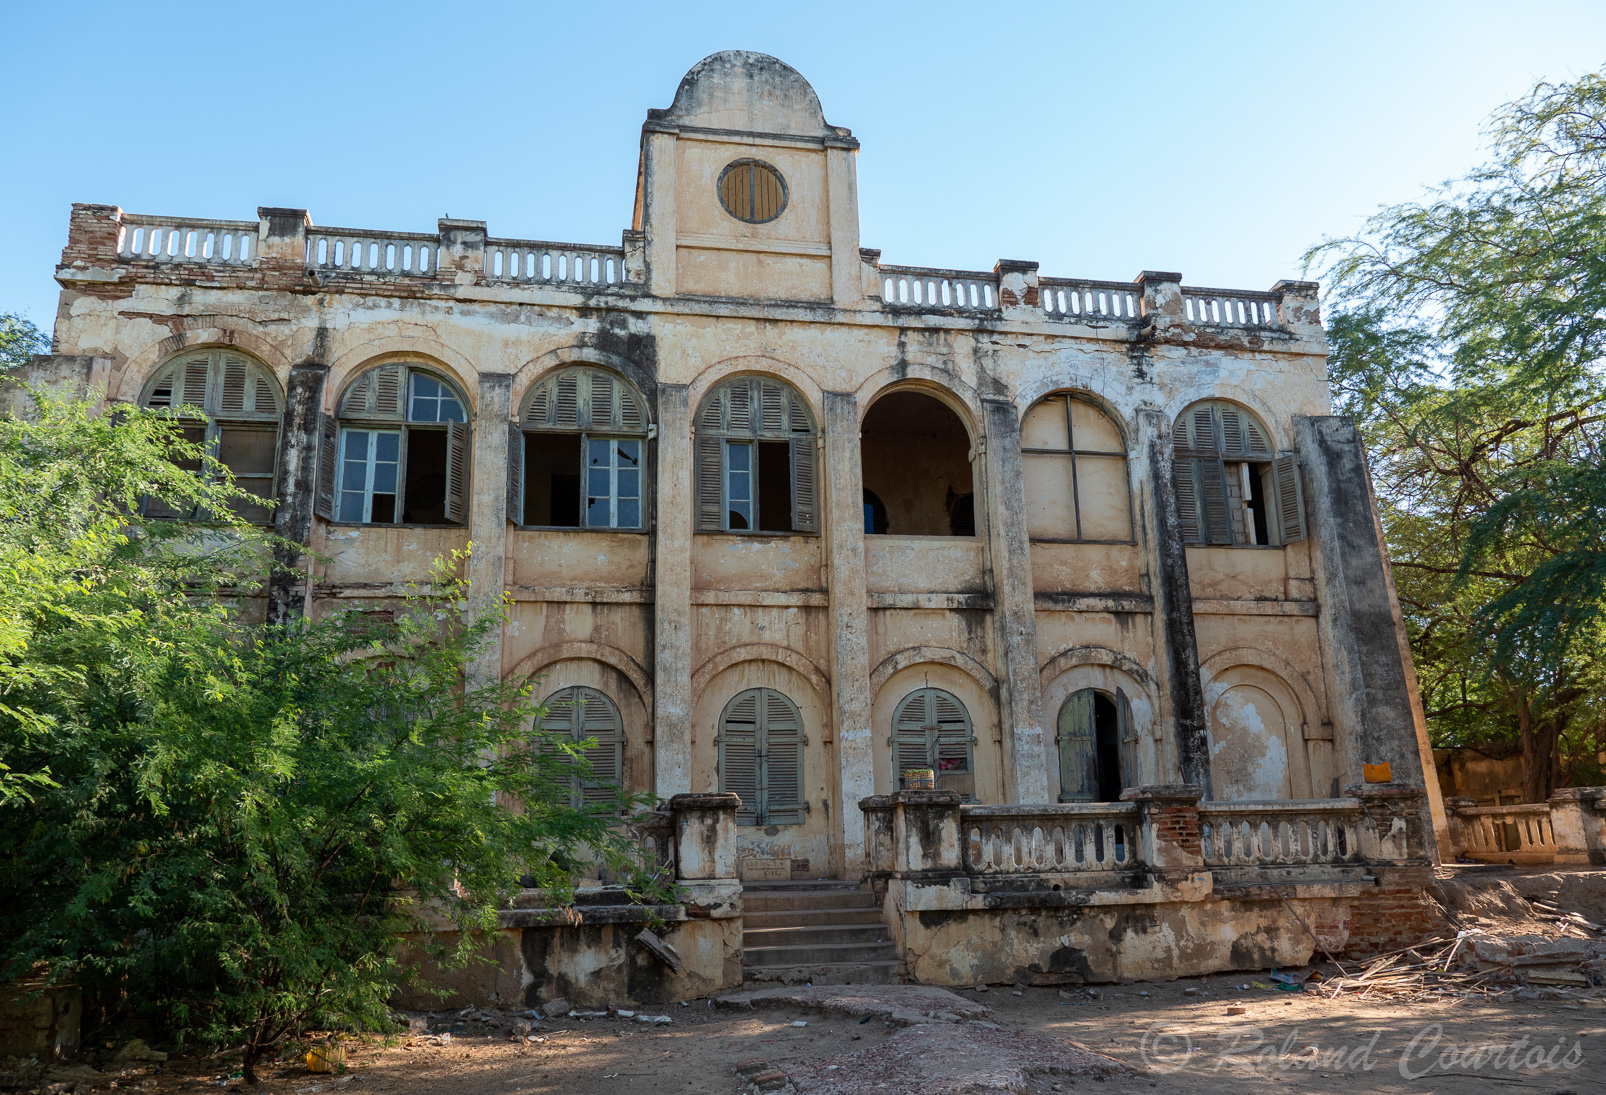 Entre 1822 et 1827, un gouverneur du Sénégal, le baron Jacques-François Roger, s'est fait construire un véritable château, habité par la suite par Louis Faidherbe, avant d'être transformé en monastère puis en école. Aujourd'hui en ruine, le bâtiment témoigne encore des ambitions du passé et constitue l'une des curiosités de l'endroit.